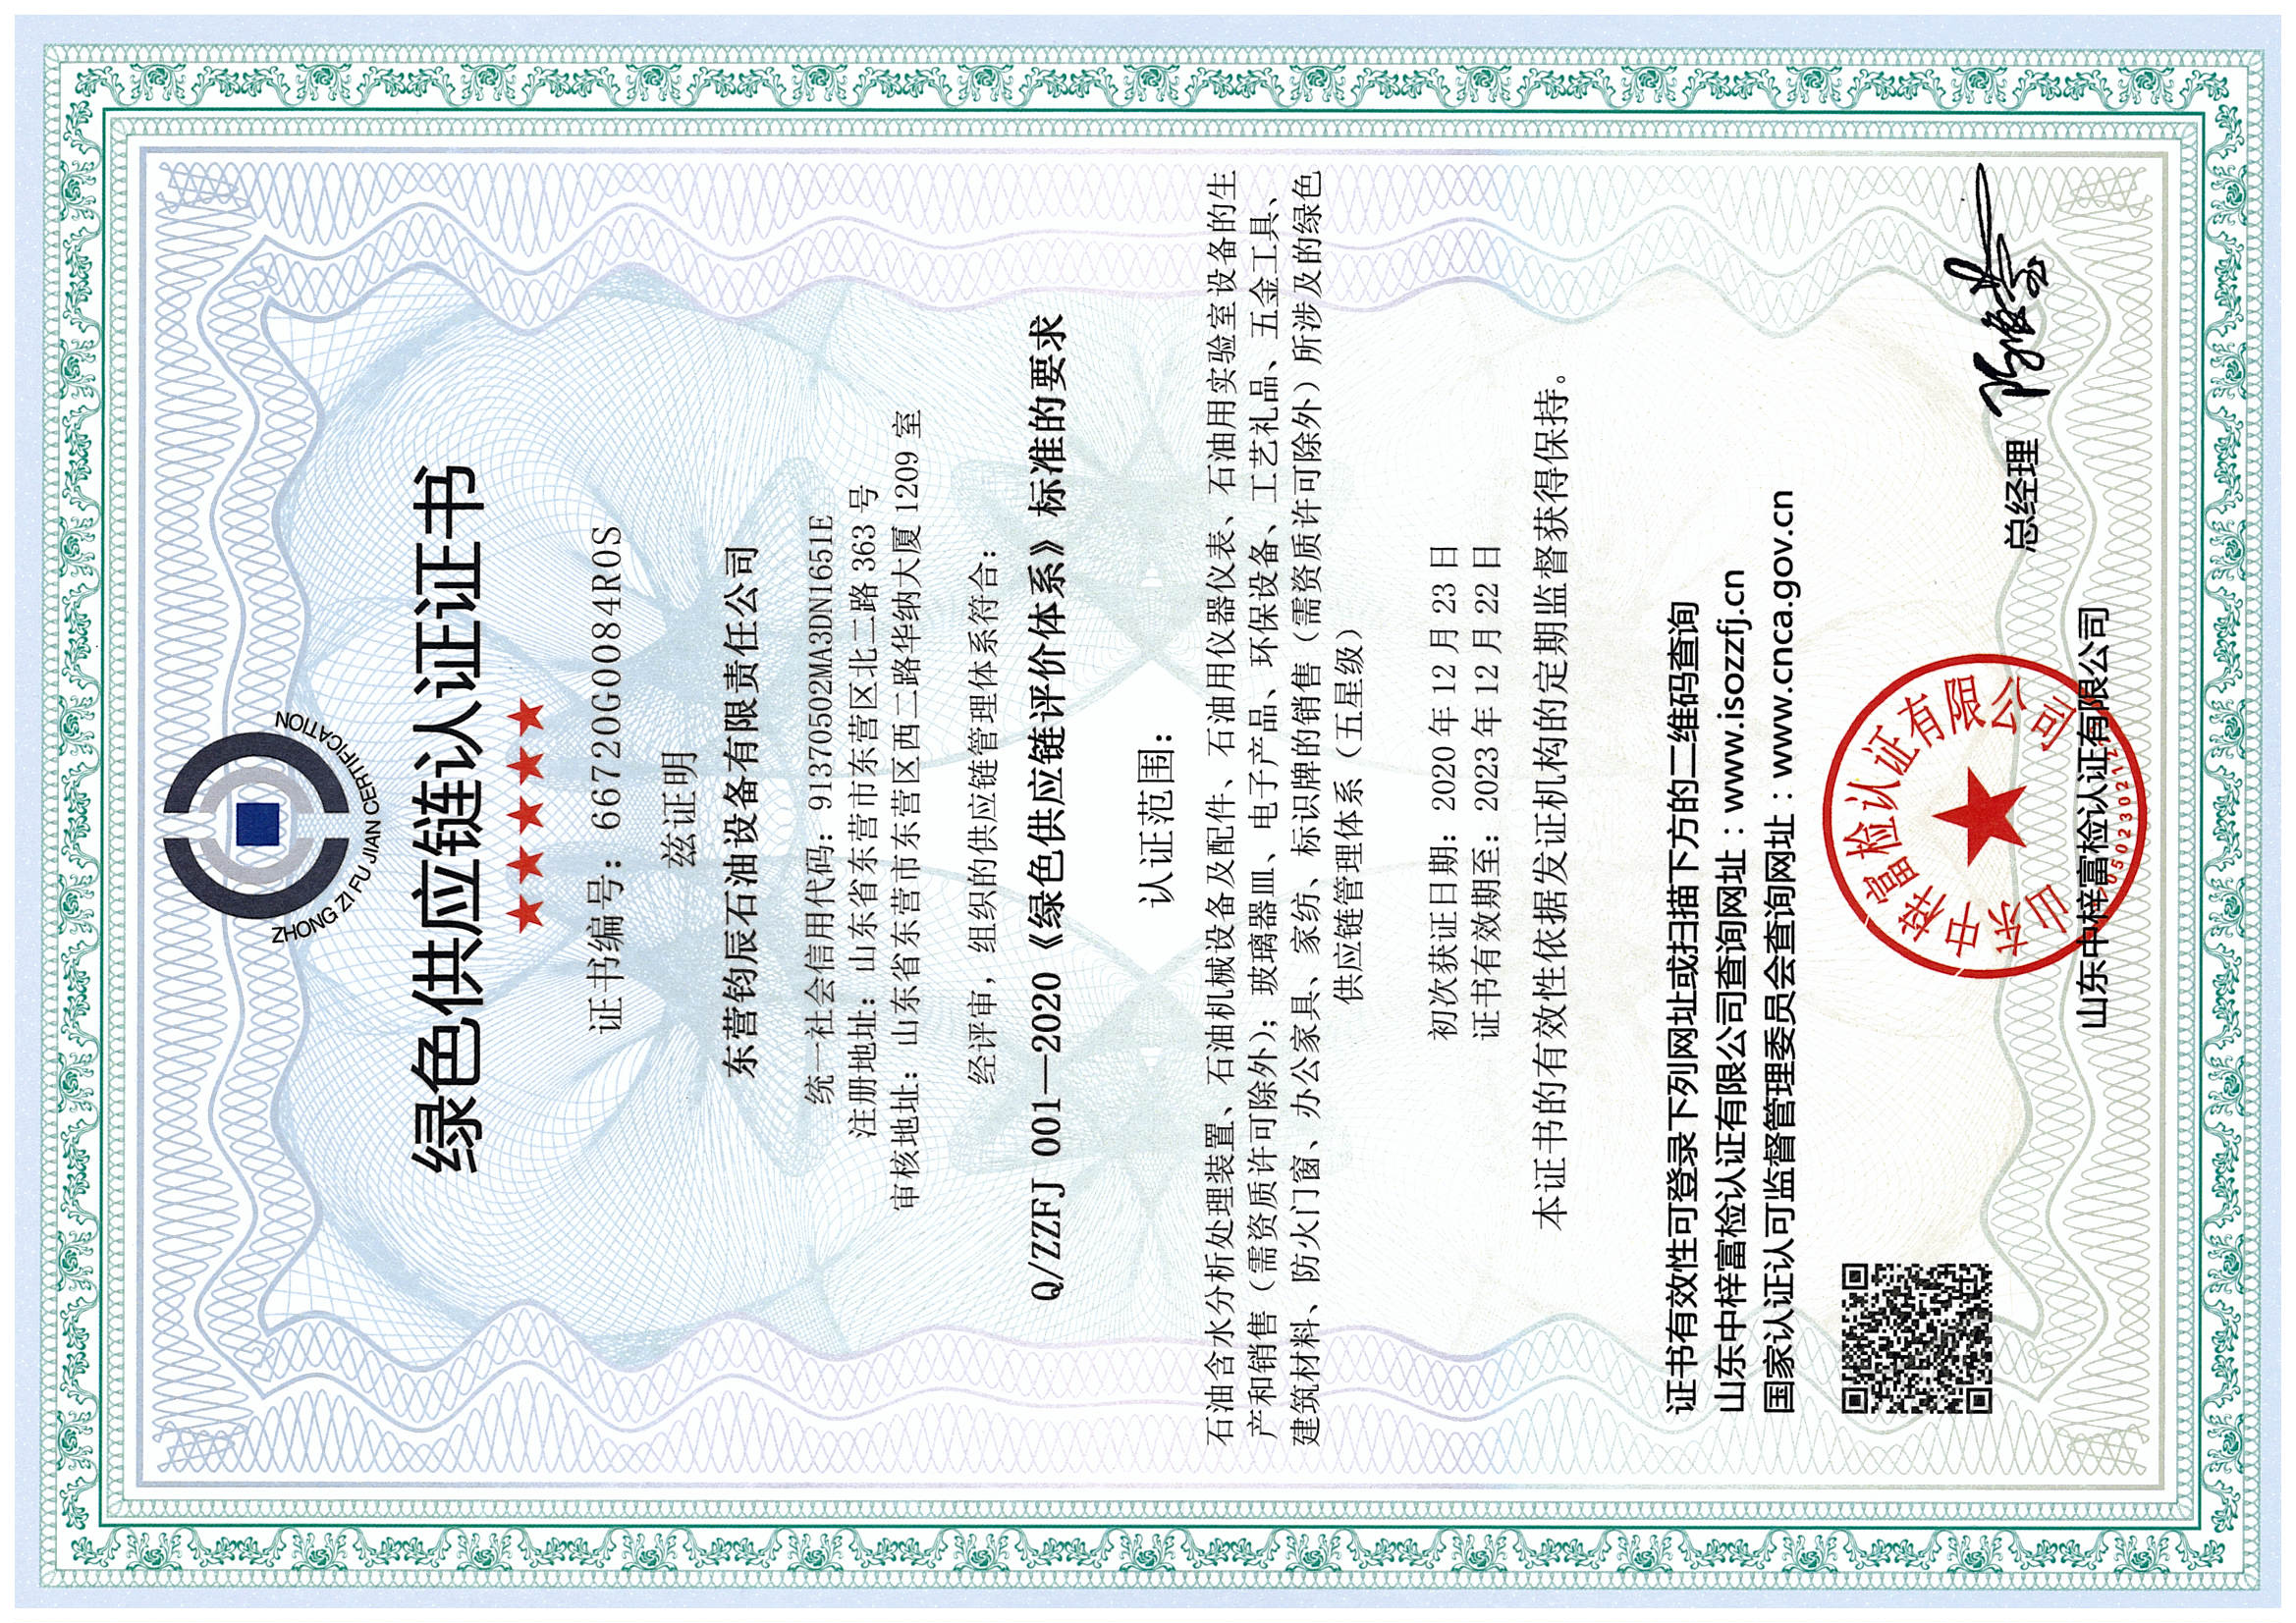 绿色供应链认证证书